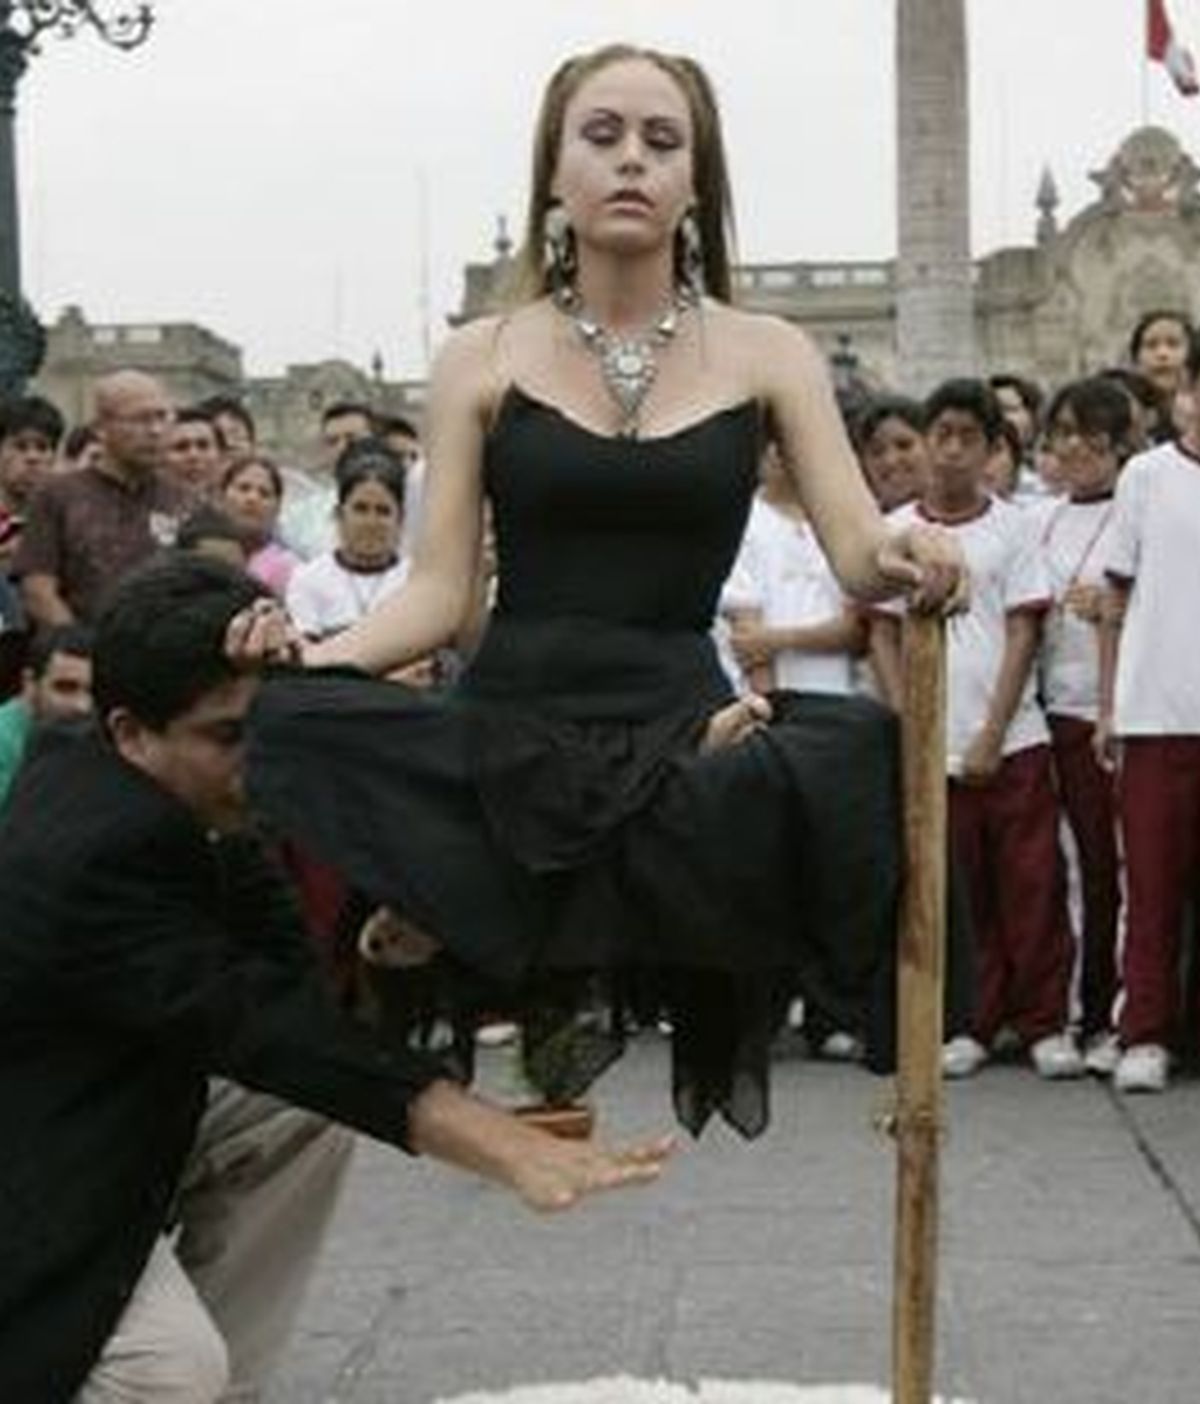 La ilusionista peruana Claudia Pacheco "Princesa Inca" realiza un acto de levitación hoy, 27 de marzo de 2009, en la Plaza de Armas de Lima (Perú). Foto: EFE